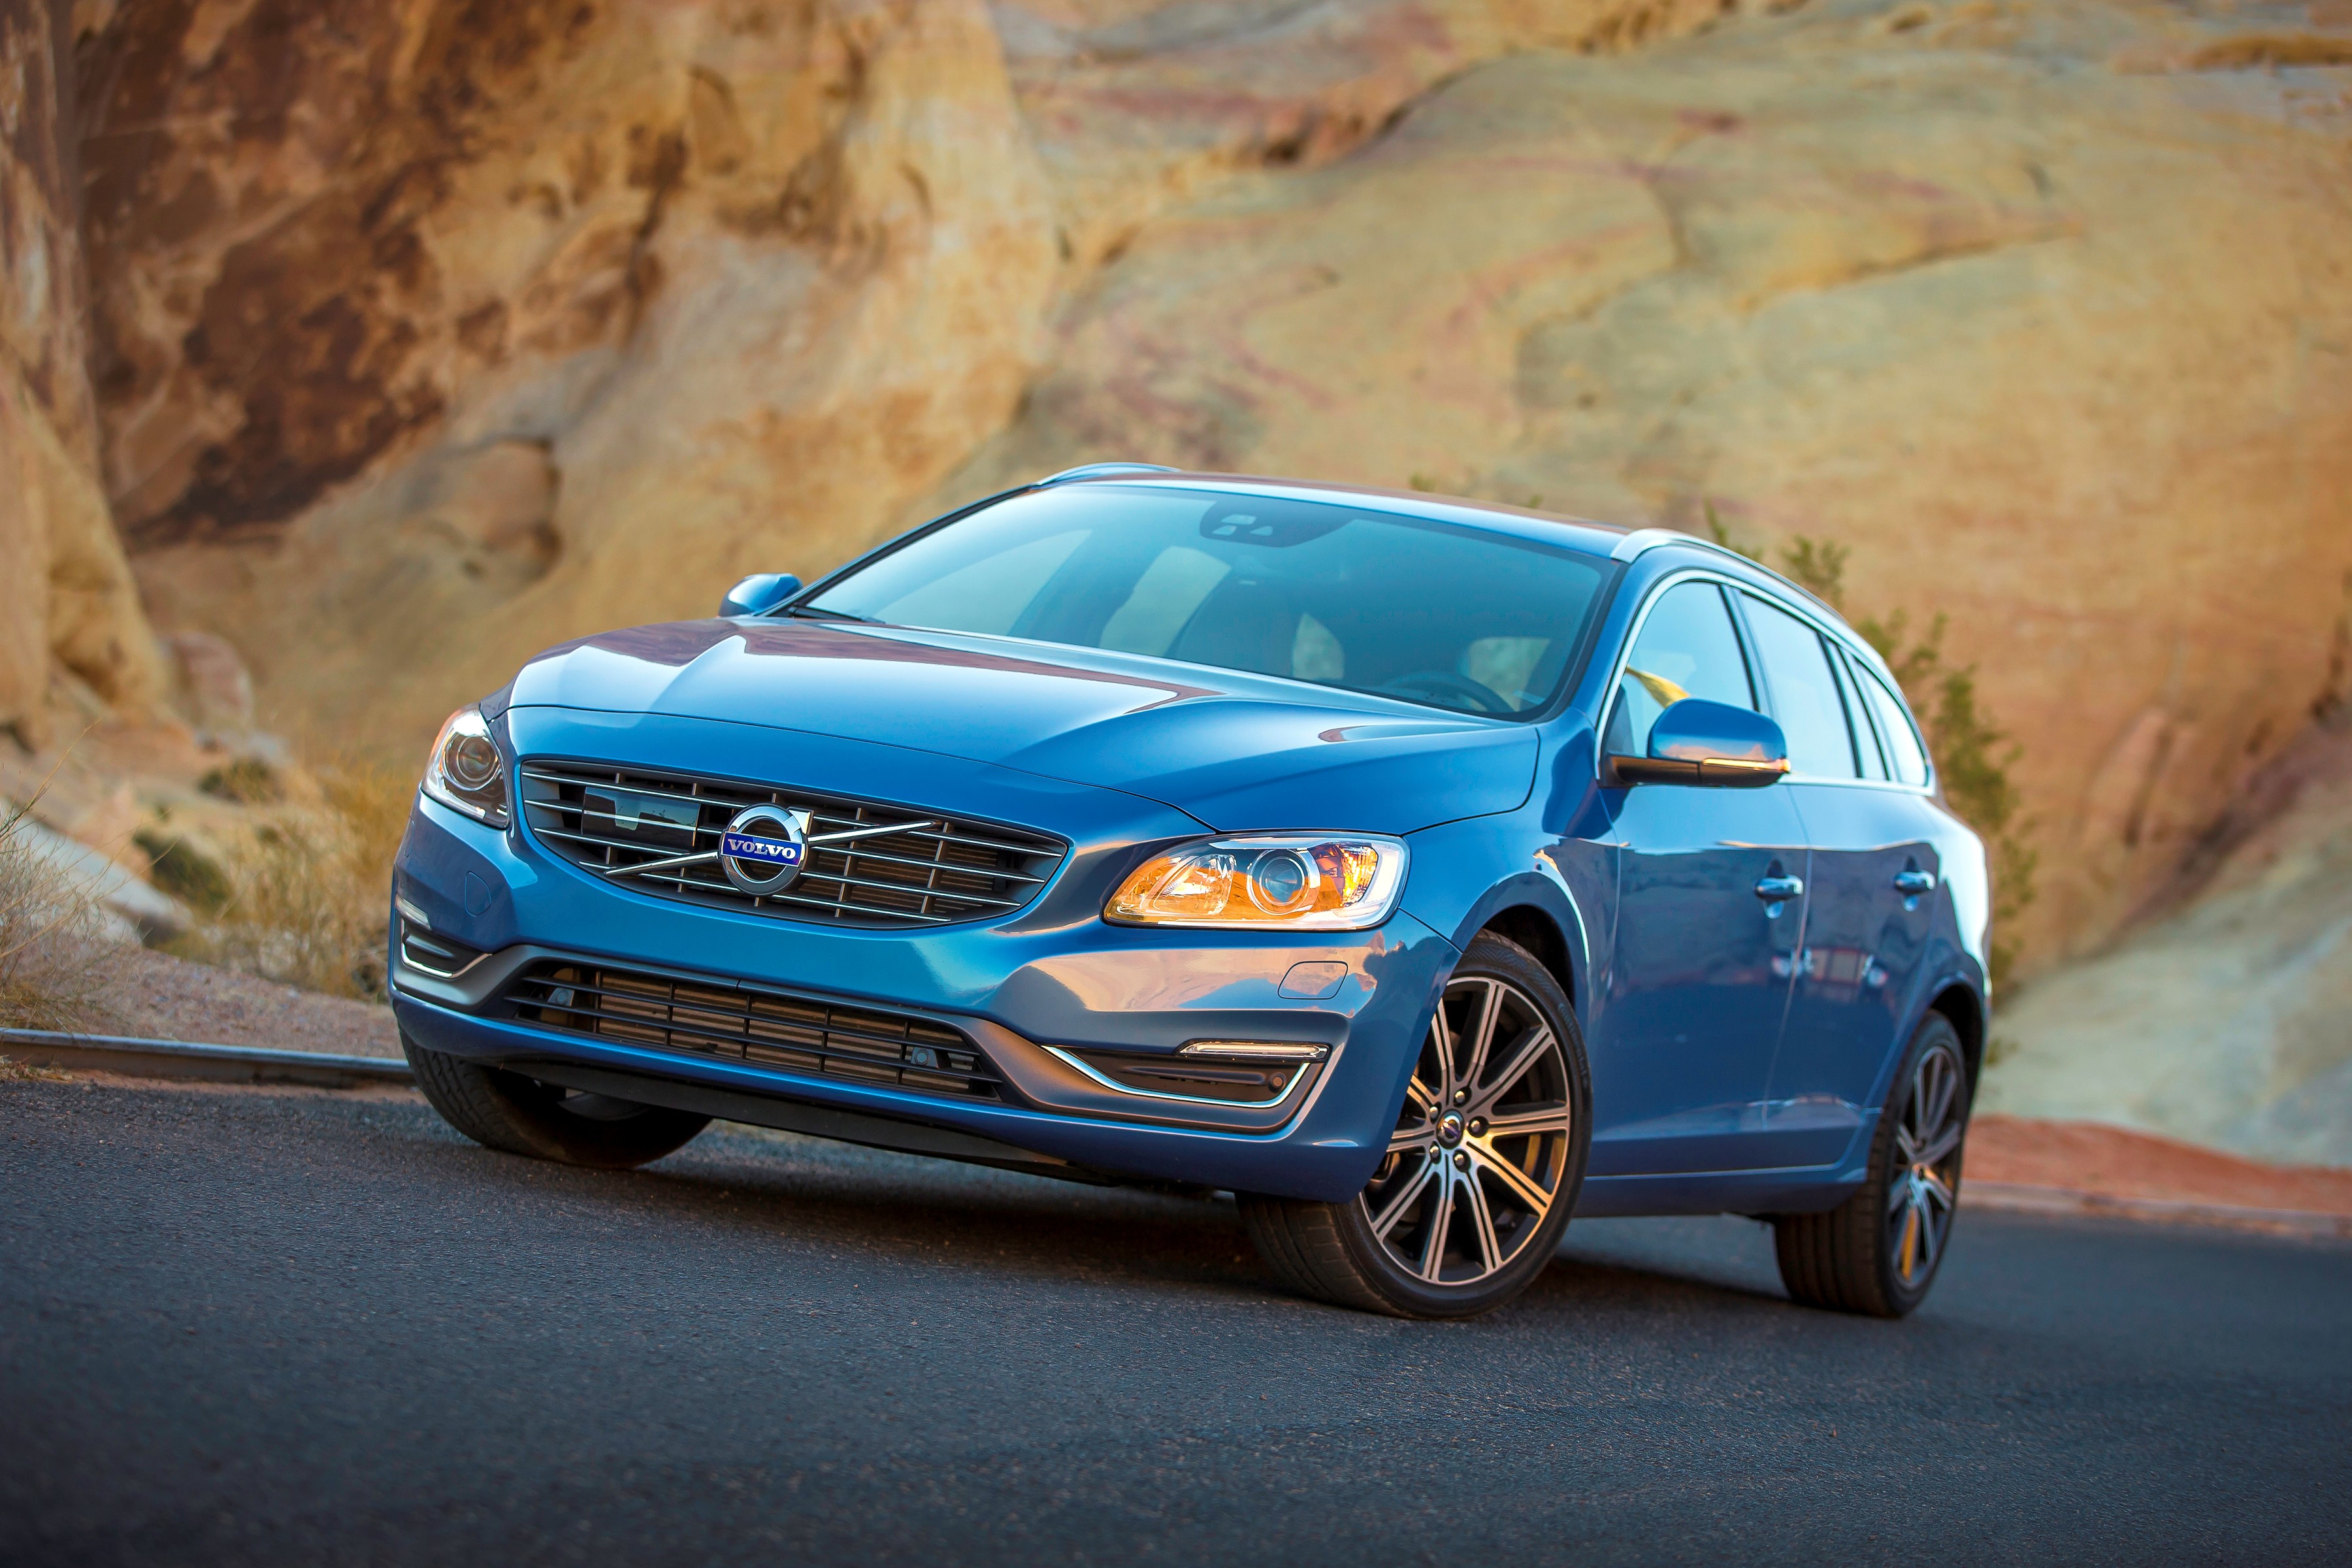  Volvo Cars: massimi risultati del riconoscimento Top Safety Pick+ 2015